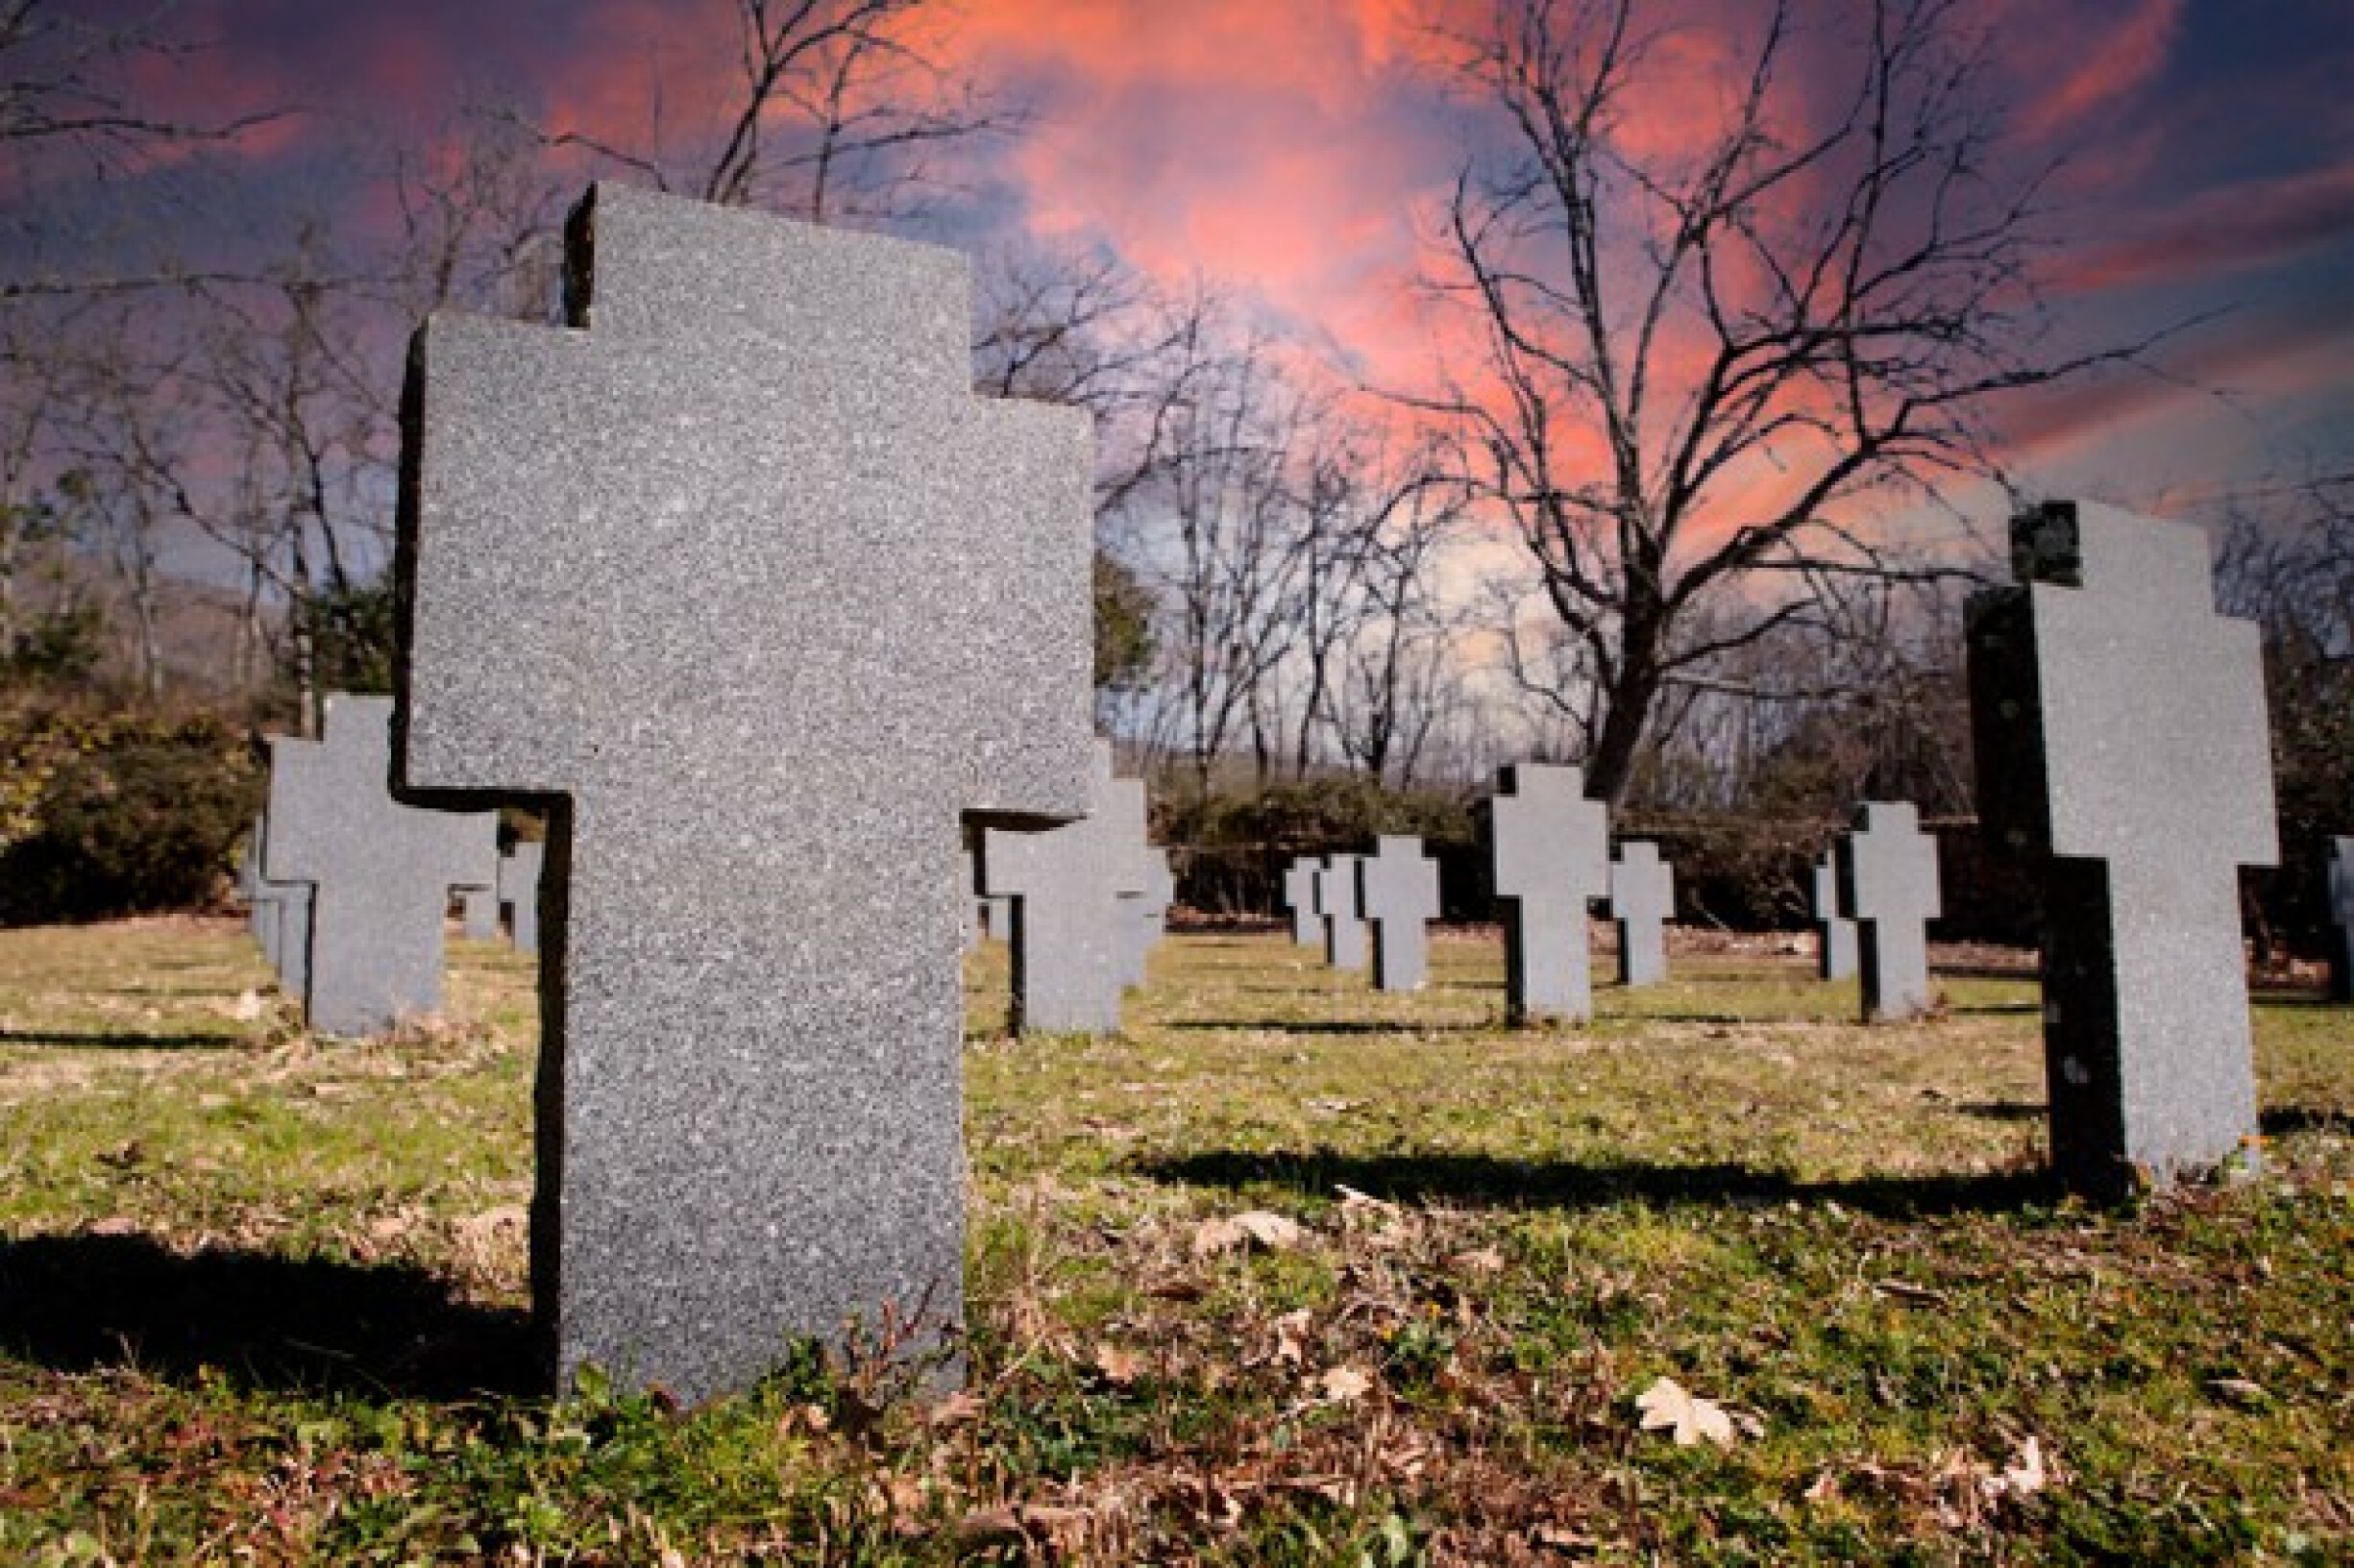 veld-vol-met-witte-granieten-stenen-kruisen-memorial-begraafplaats-eerbetoon-aan-gevallen-soldaten-58409-22572.jpg